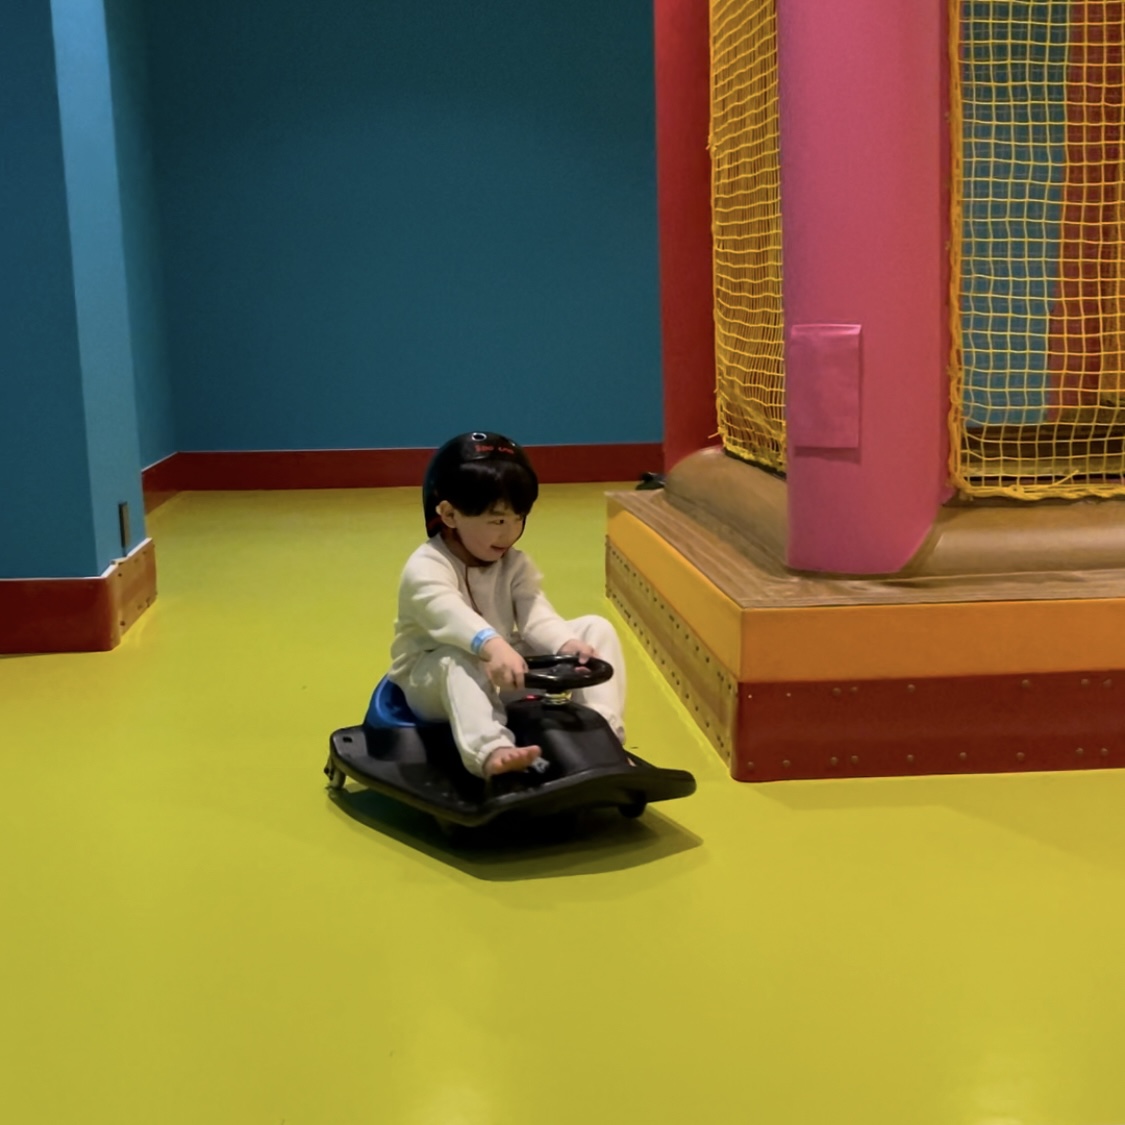 スポッチャダイバーシティ東京プラザ店。キッズスペースにあるゴーカートに乗る息子。